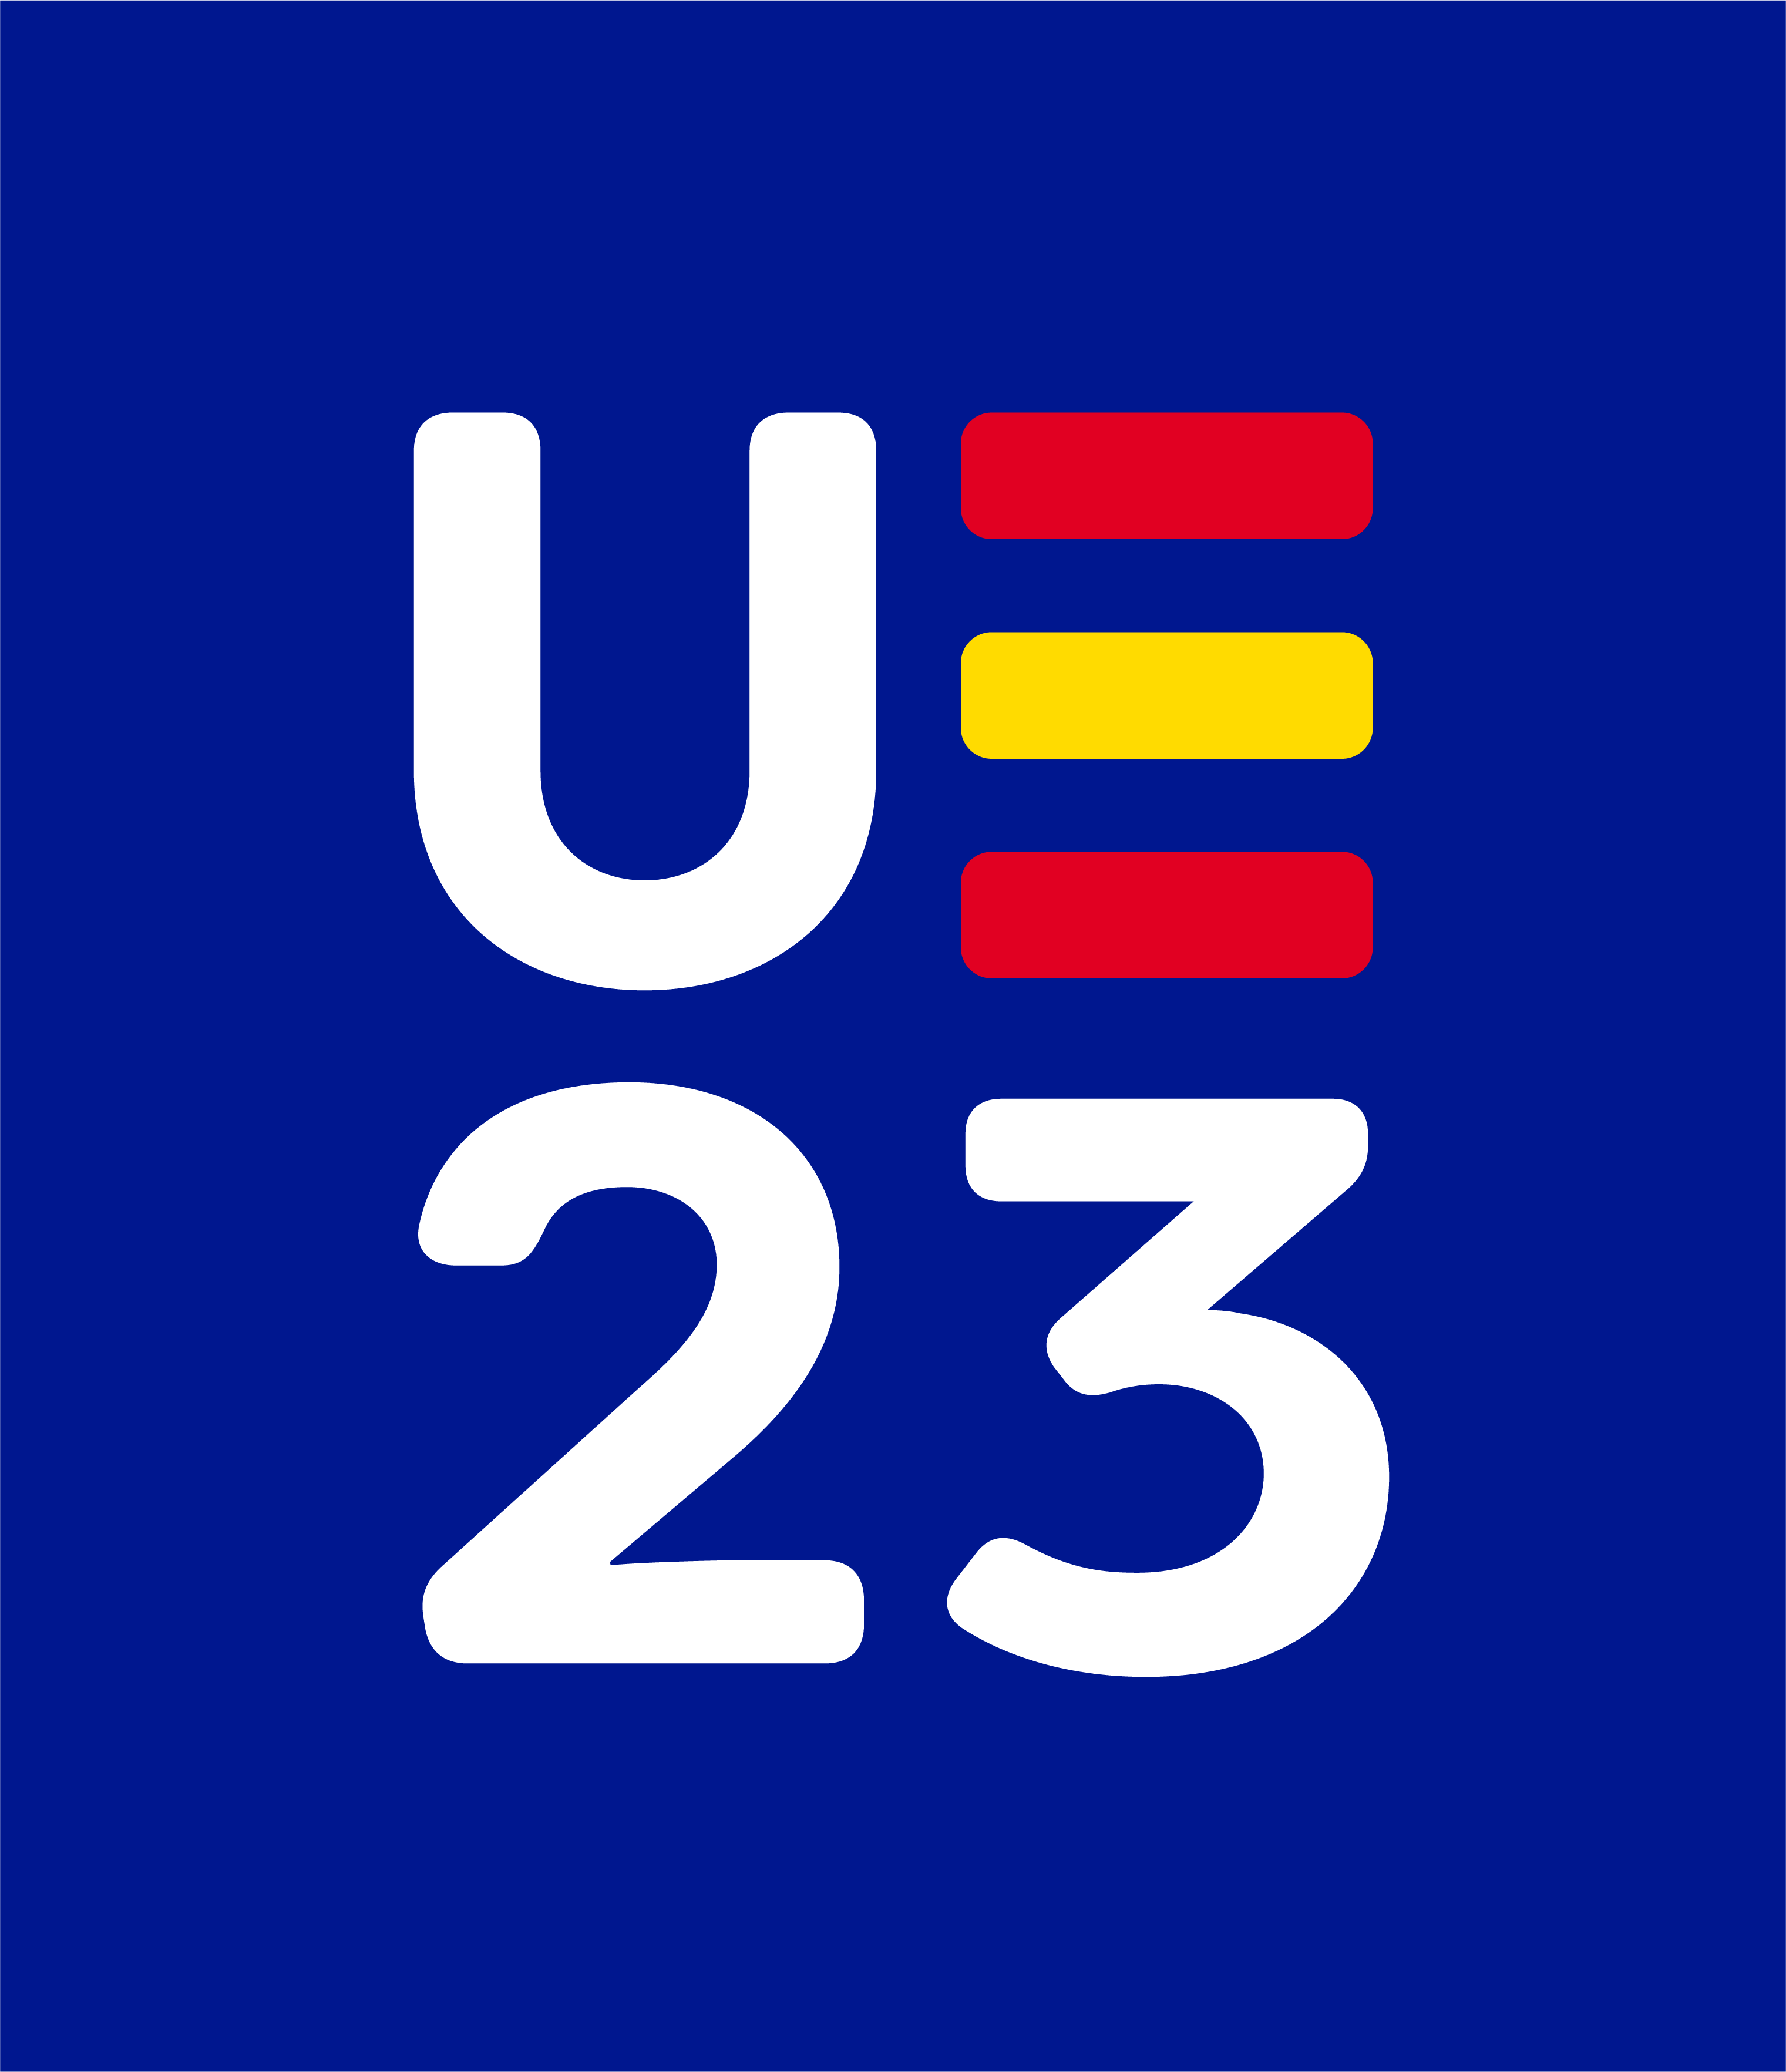 Presidencia Española del Consejo de la Unión Europea 2023